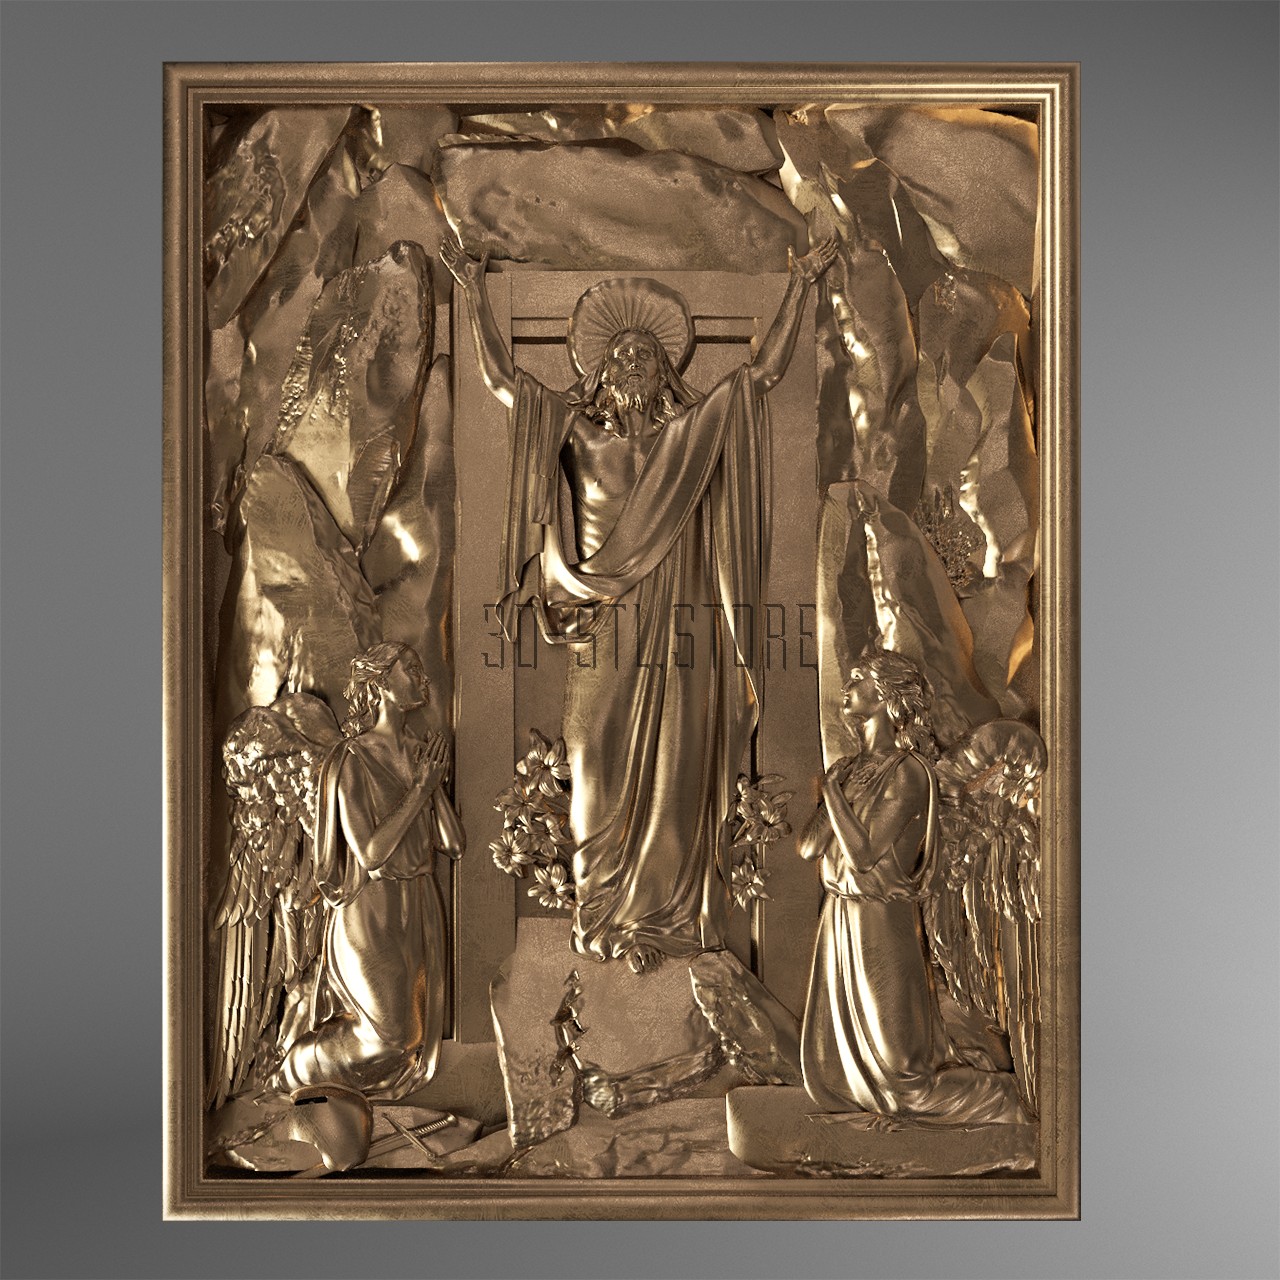 Panel Resurrection of Christ, 3d models (stl)